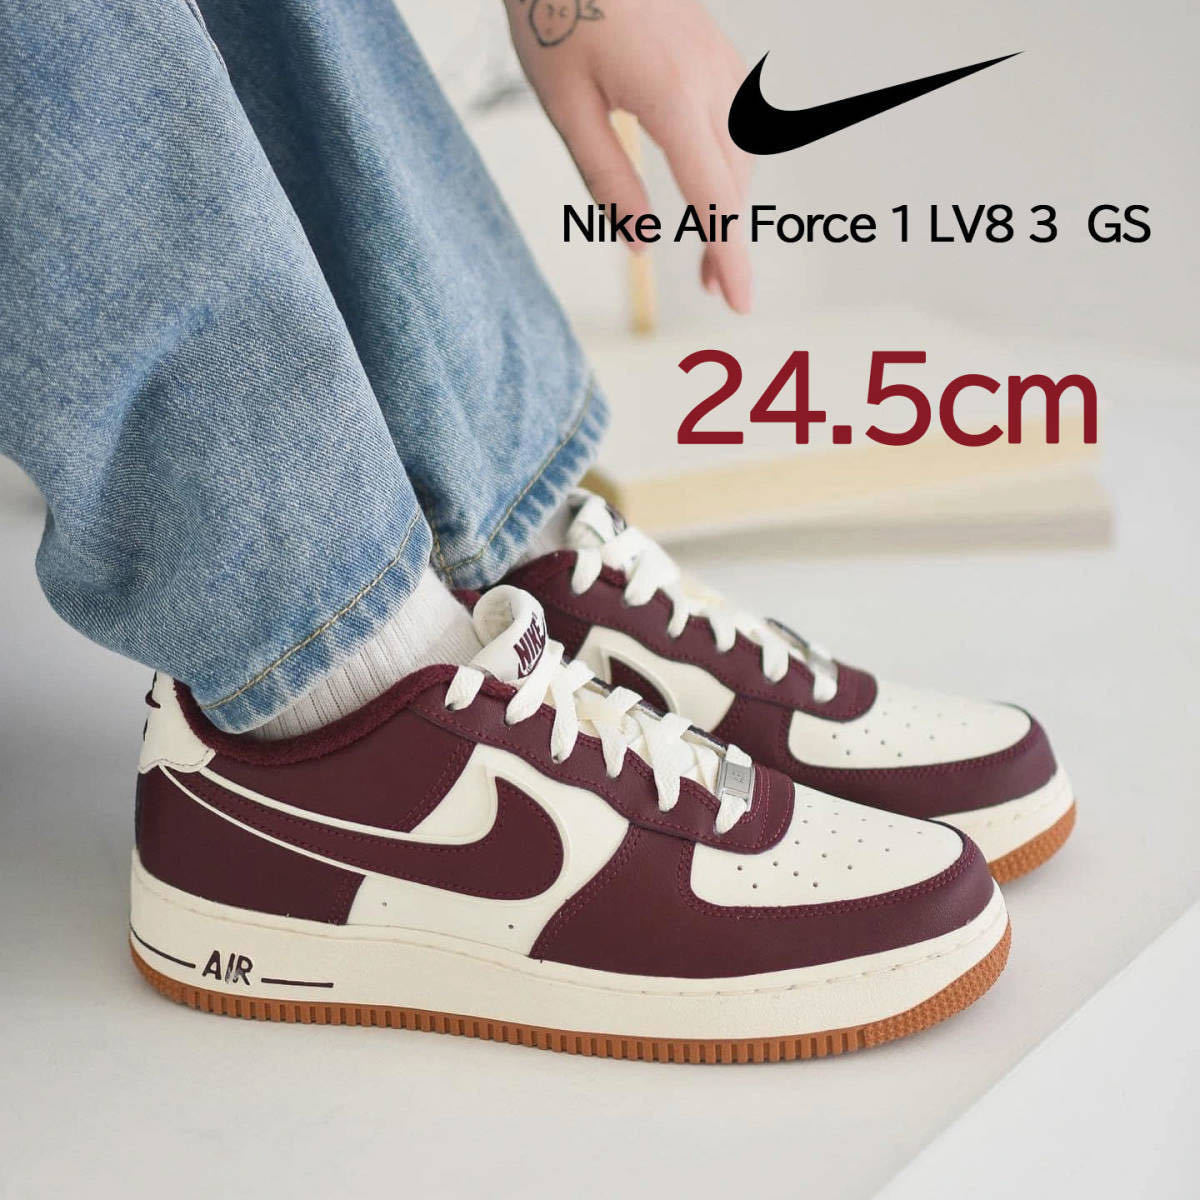 【送料無料】【新品】24.5cm Nike AirForce1 LV8 3 GS ナイキ エア フォース1 LV8 3 GS セイル/ナイトマルーン_画像1